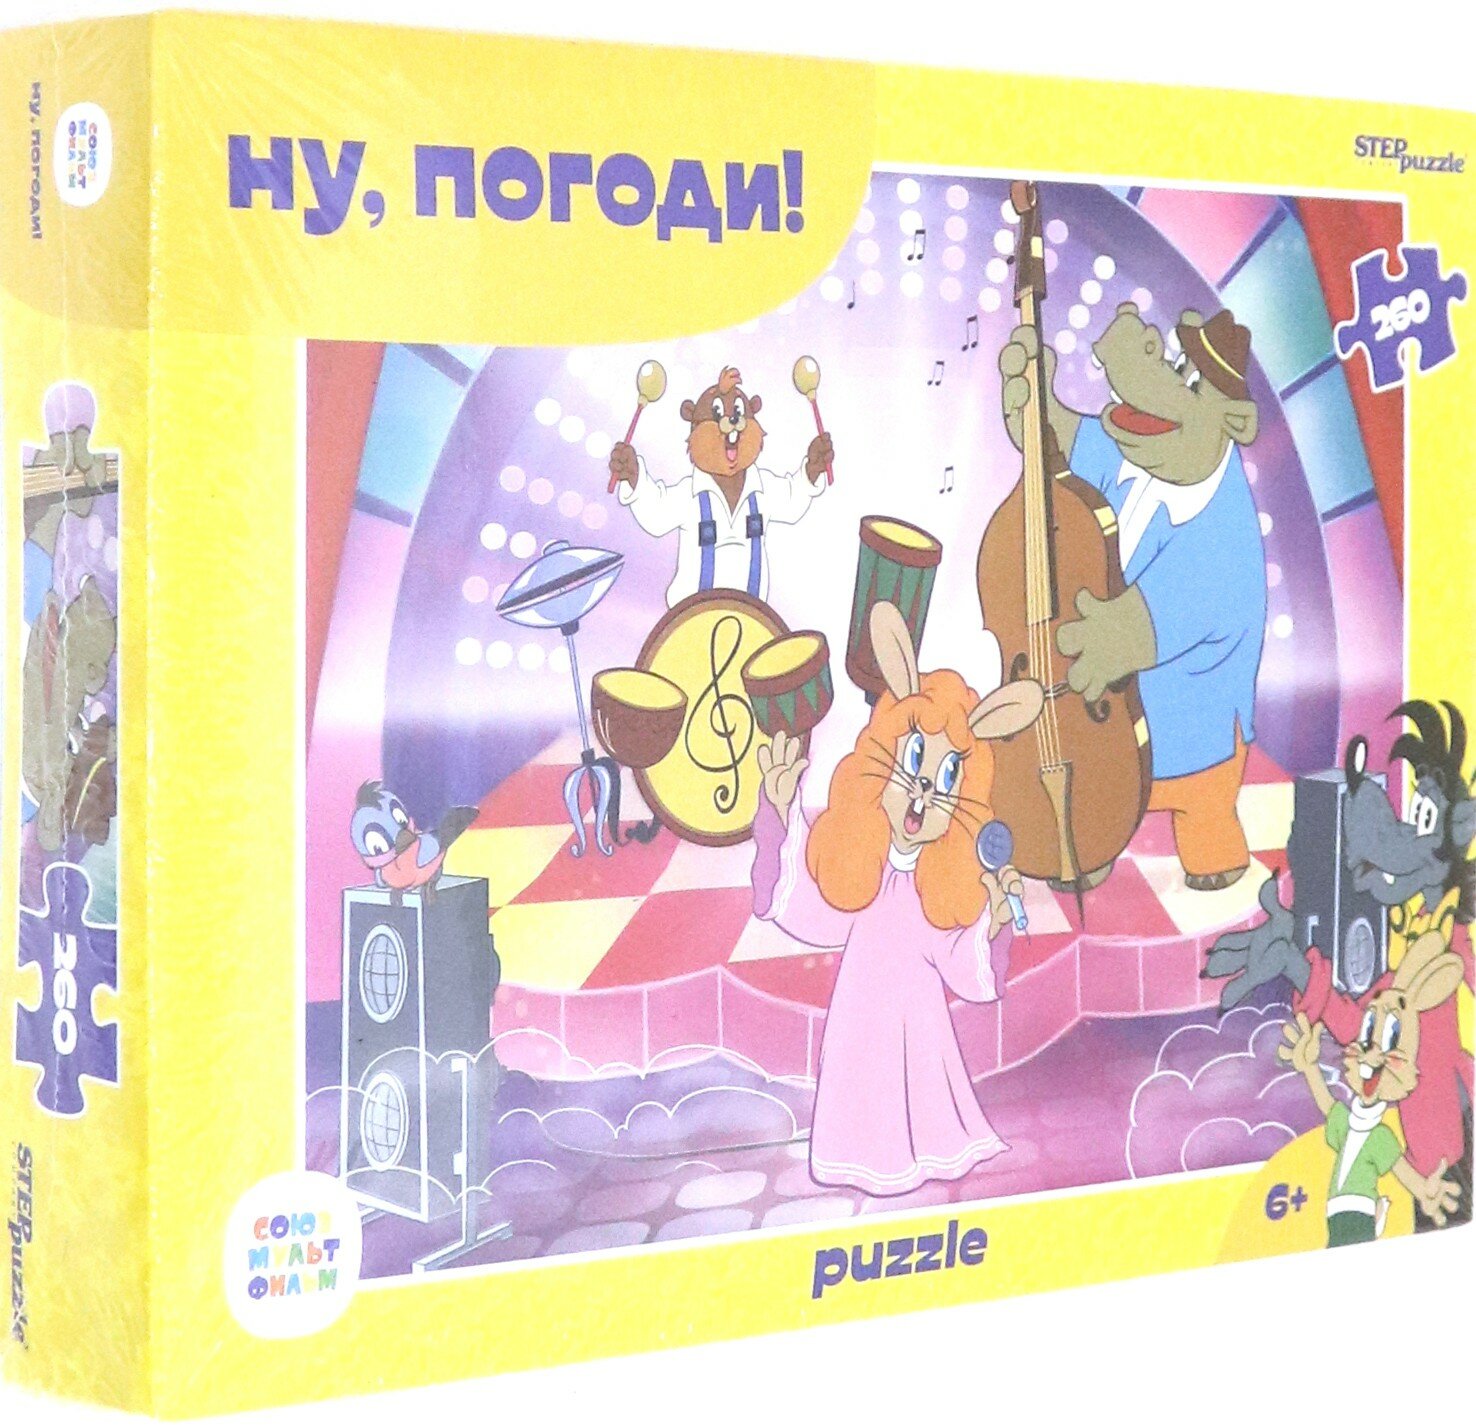 Мозаика "puzzle" 260 "Ну, погоди! (new)" (74071) Степ Пазл - фото №11